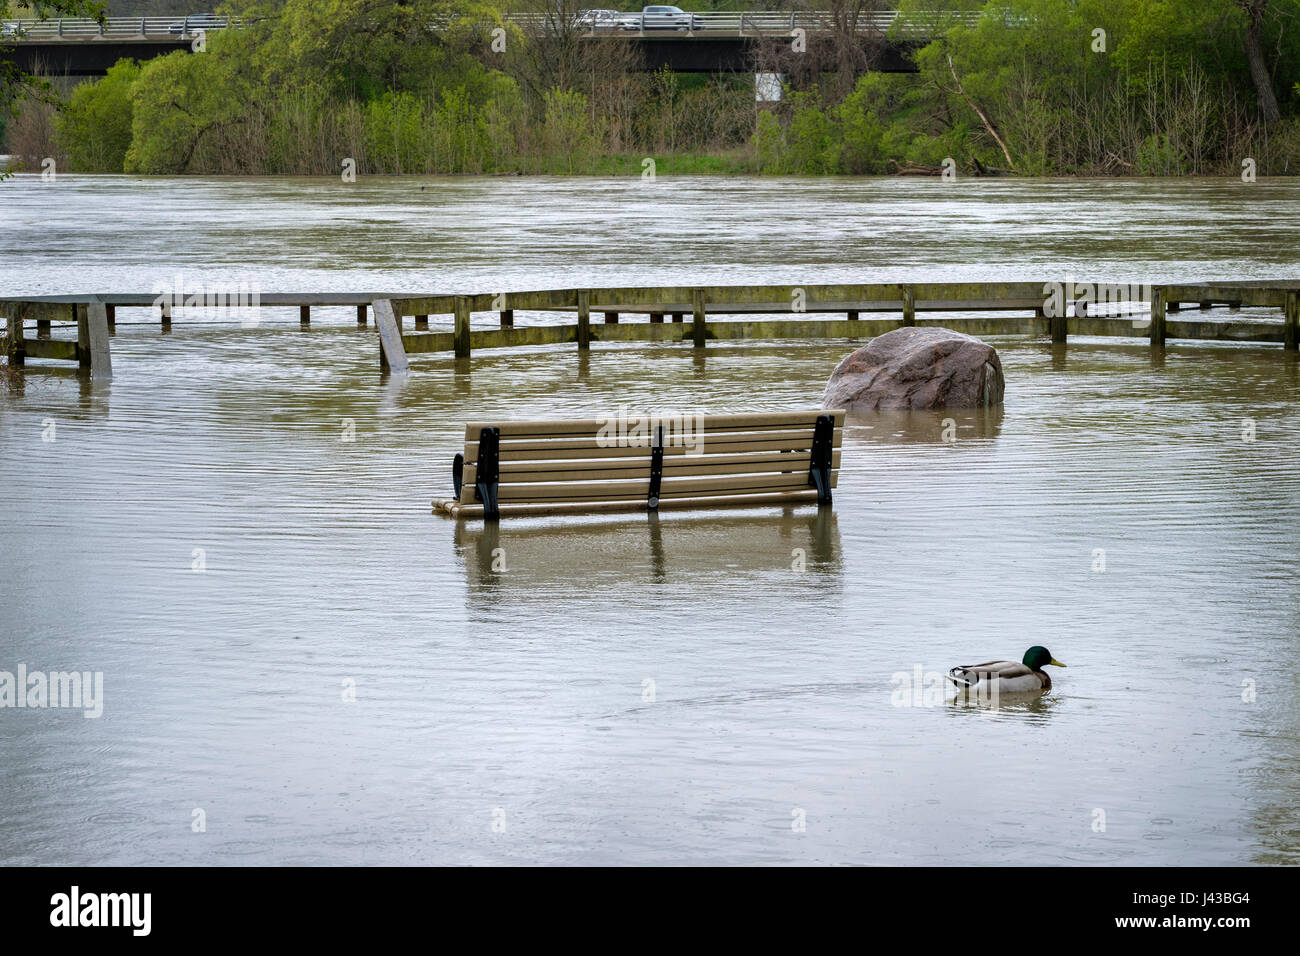 Rivière Thames inondations causées par de fortes pluies en mai, 2017, parc inondés, banc de parc, parking, London, Ontario, Canada. Banque D'Images